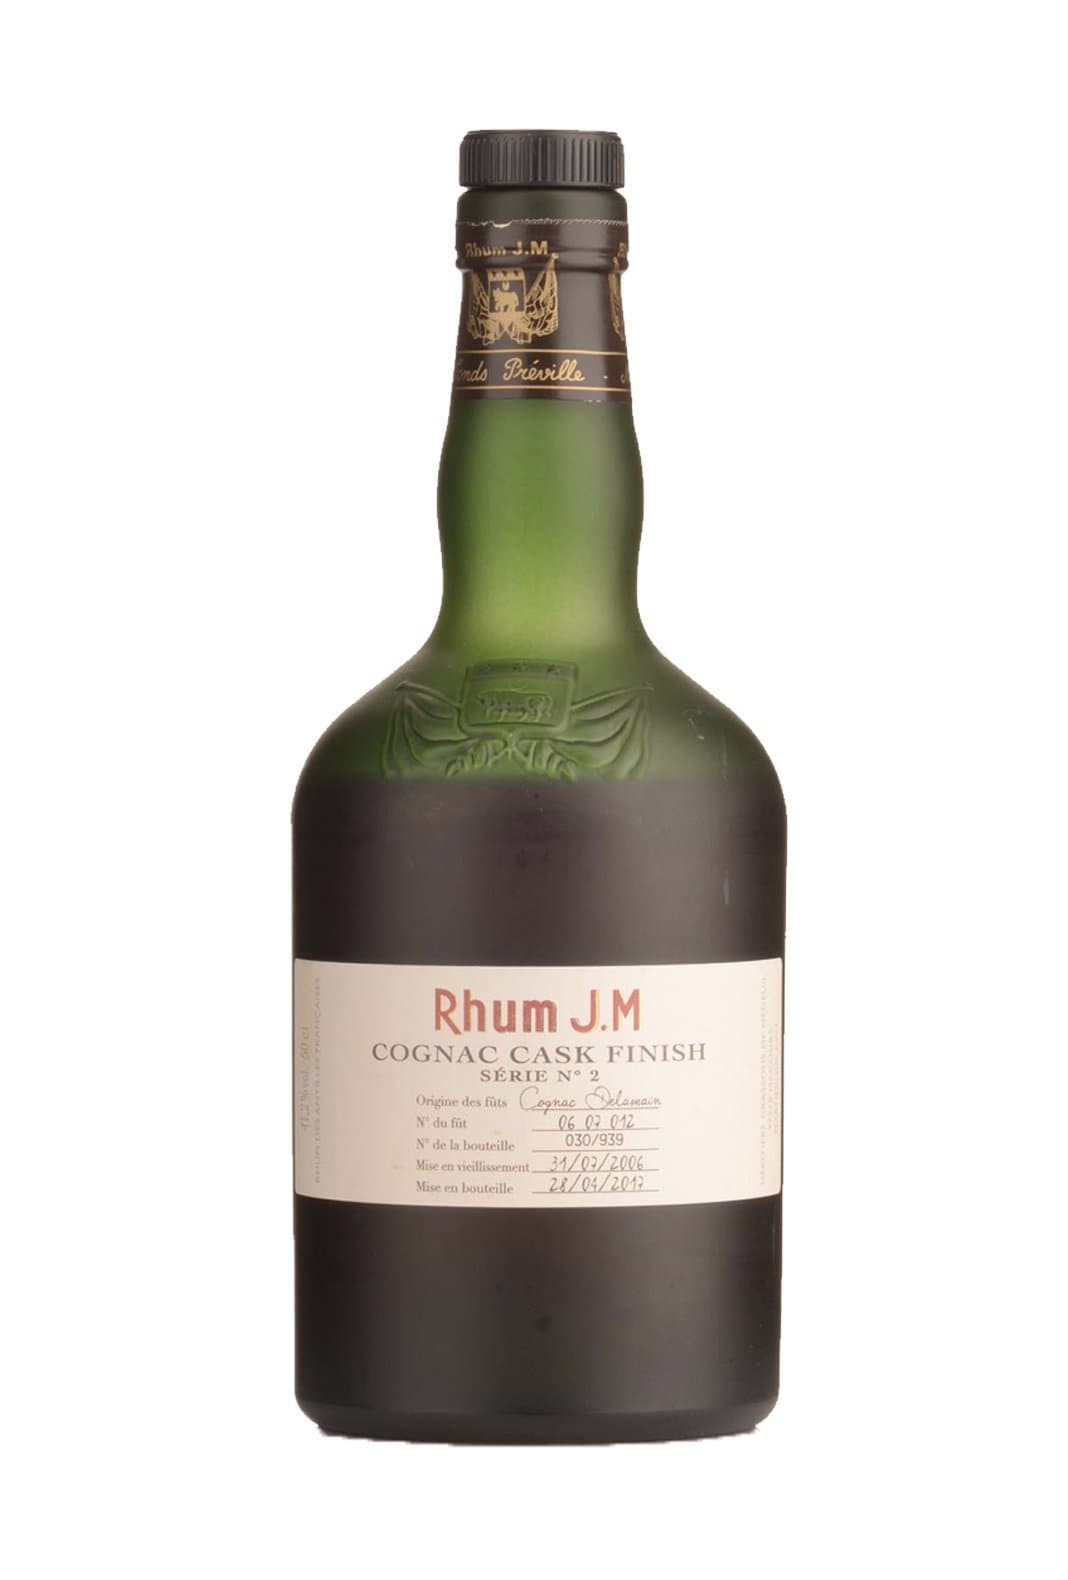 J.M Rhum Agricole 2006 Delamain Cask (Cognac) Finish 41.2% 500ml | Rum | Shop online at Spirits of France